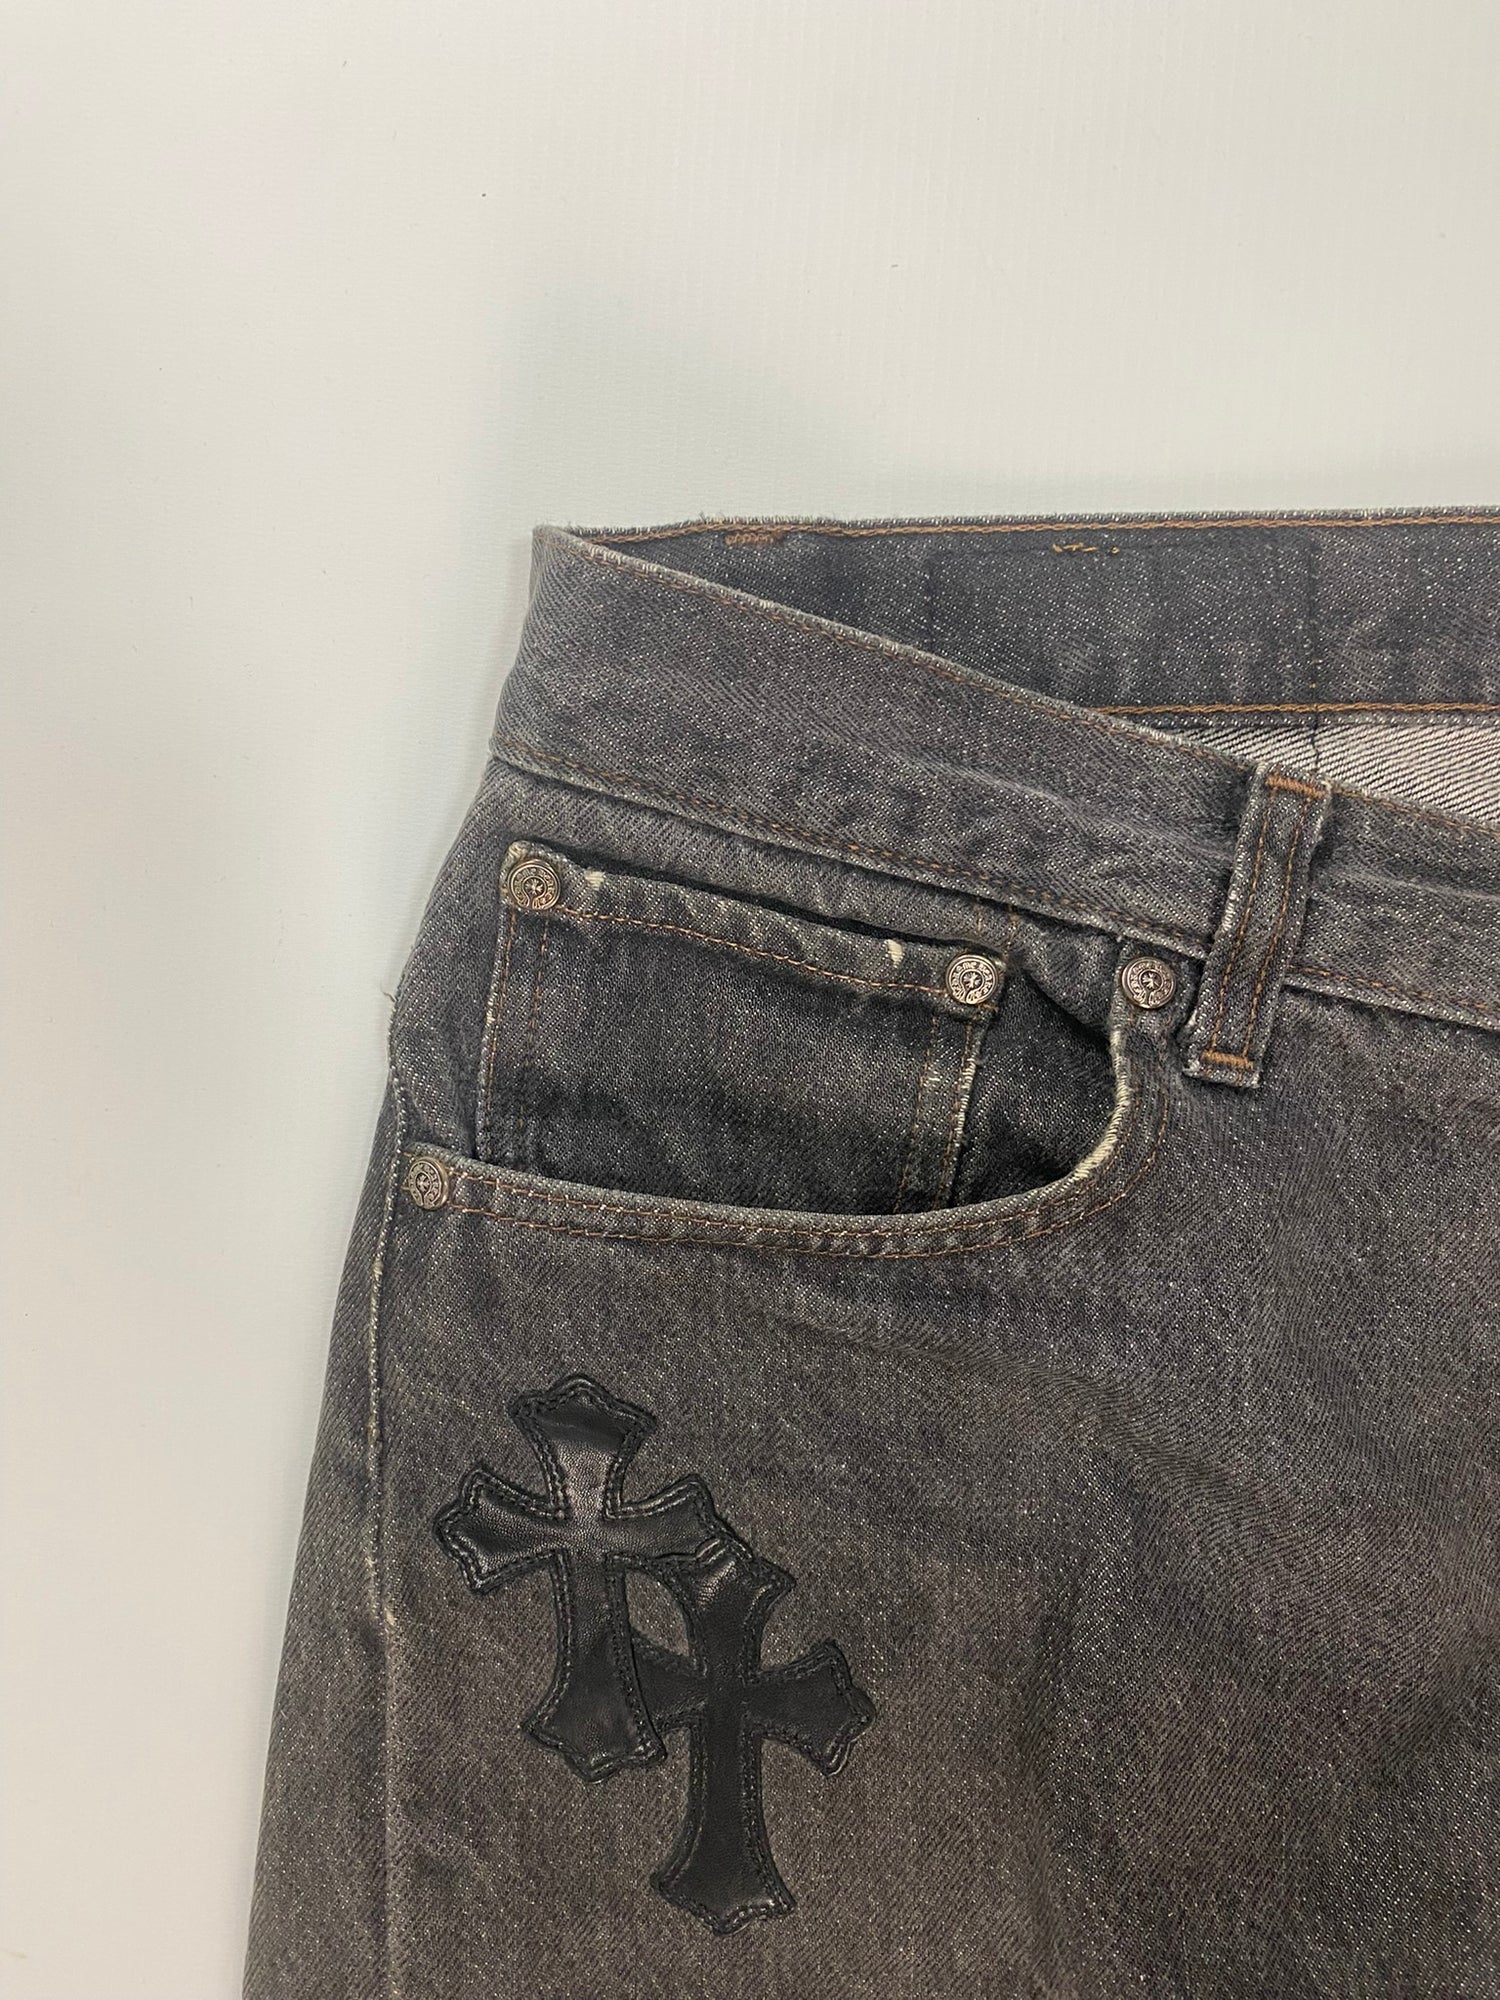 Chrome Hearts Vintage Levi's Jeans Black